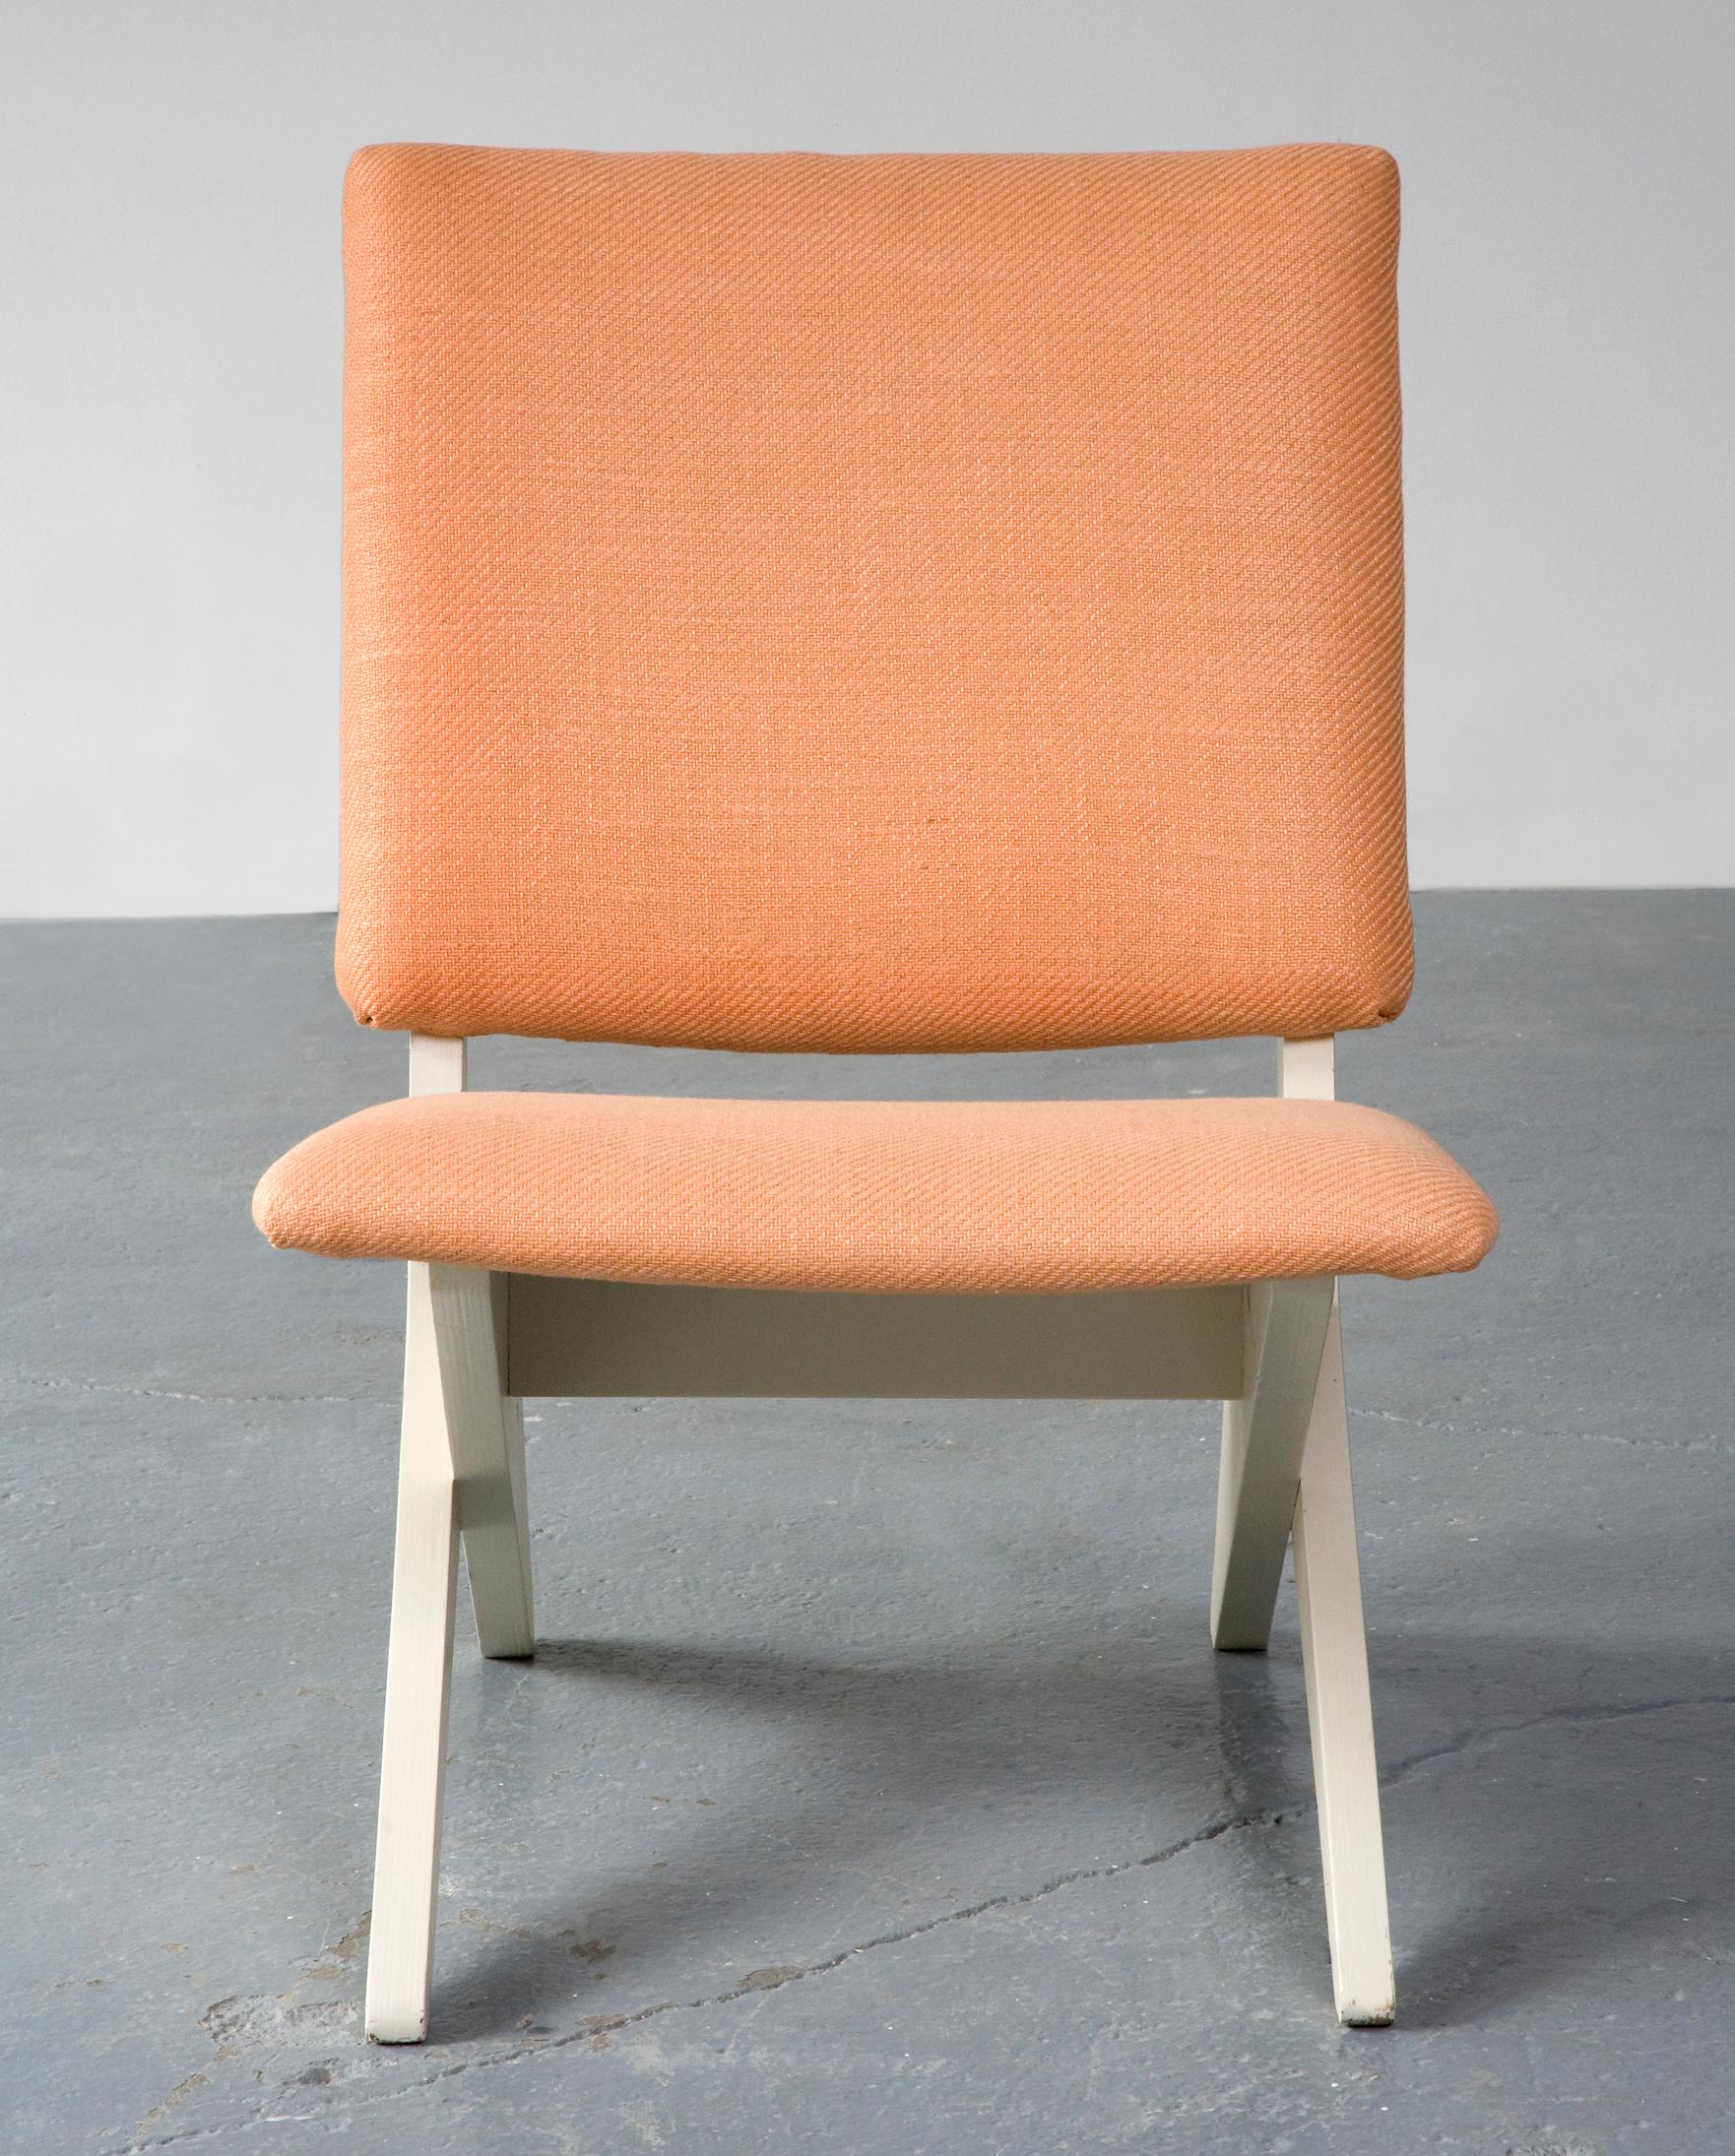 Modern Upholstered Chair on Sculptural Plywood Bae by Peter van Grunsven, 1958